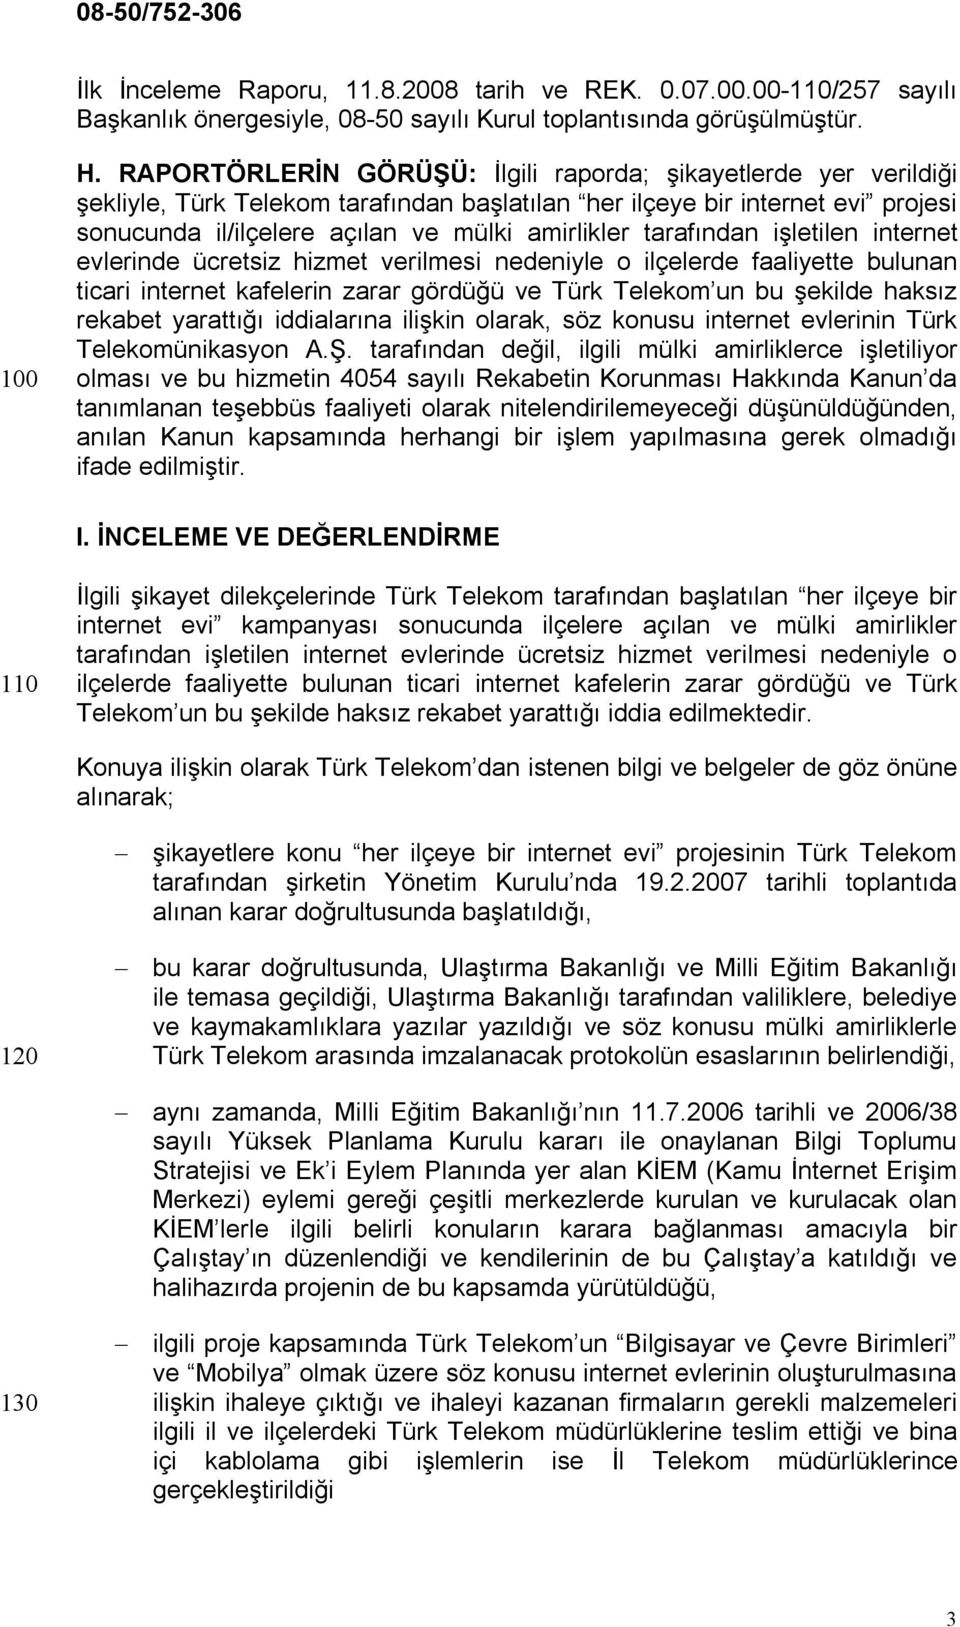 tarafından işletilen internet evlerinde ücretsiz hizmet verilmesi nedeniyle o ilçelerde faaliyette bulunan ticari internet kafelerin zarar gördüğü ve Türk Telekom un bu şekilde haksız rekabet